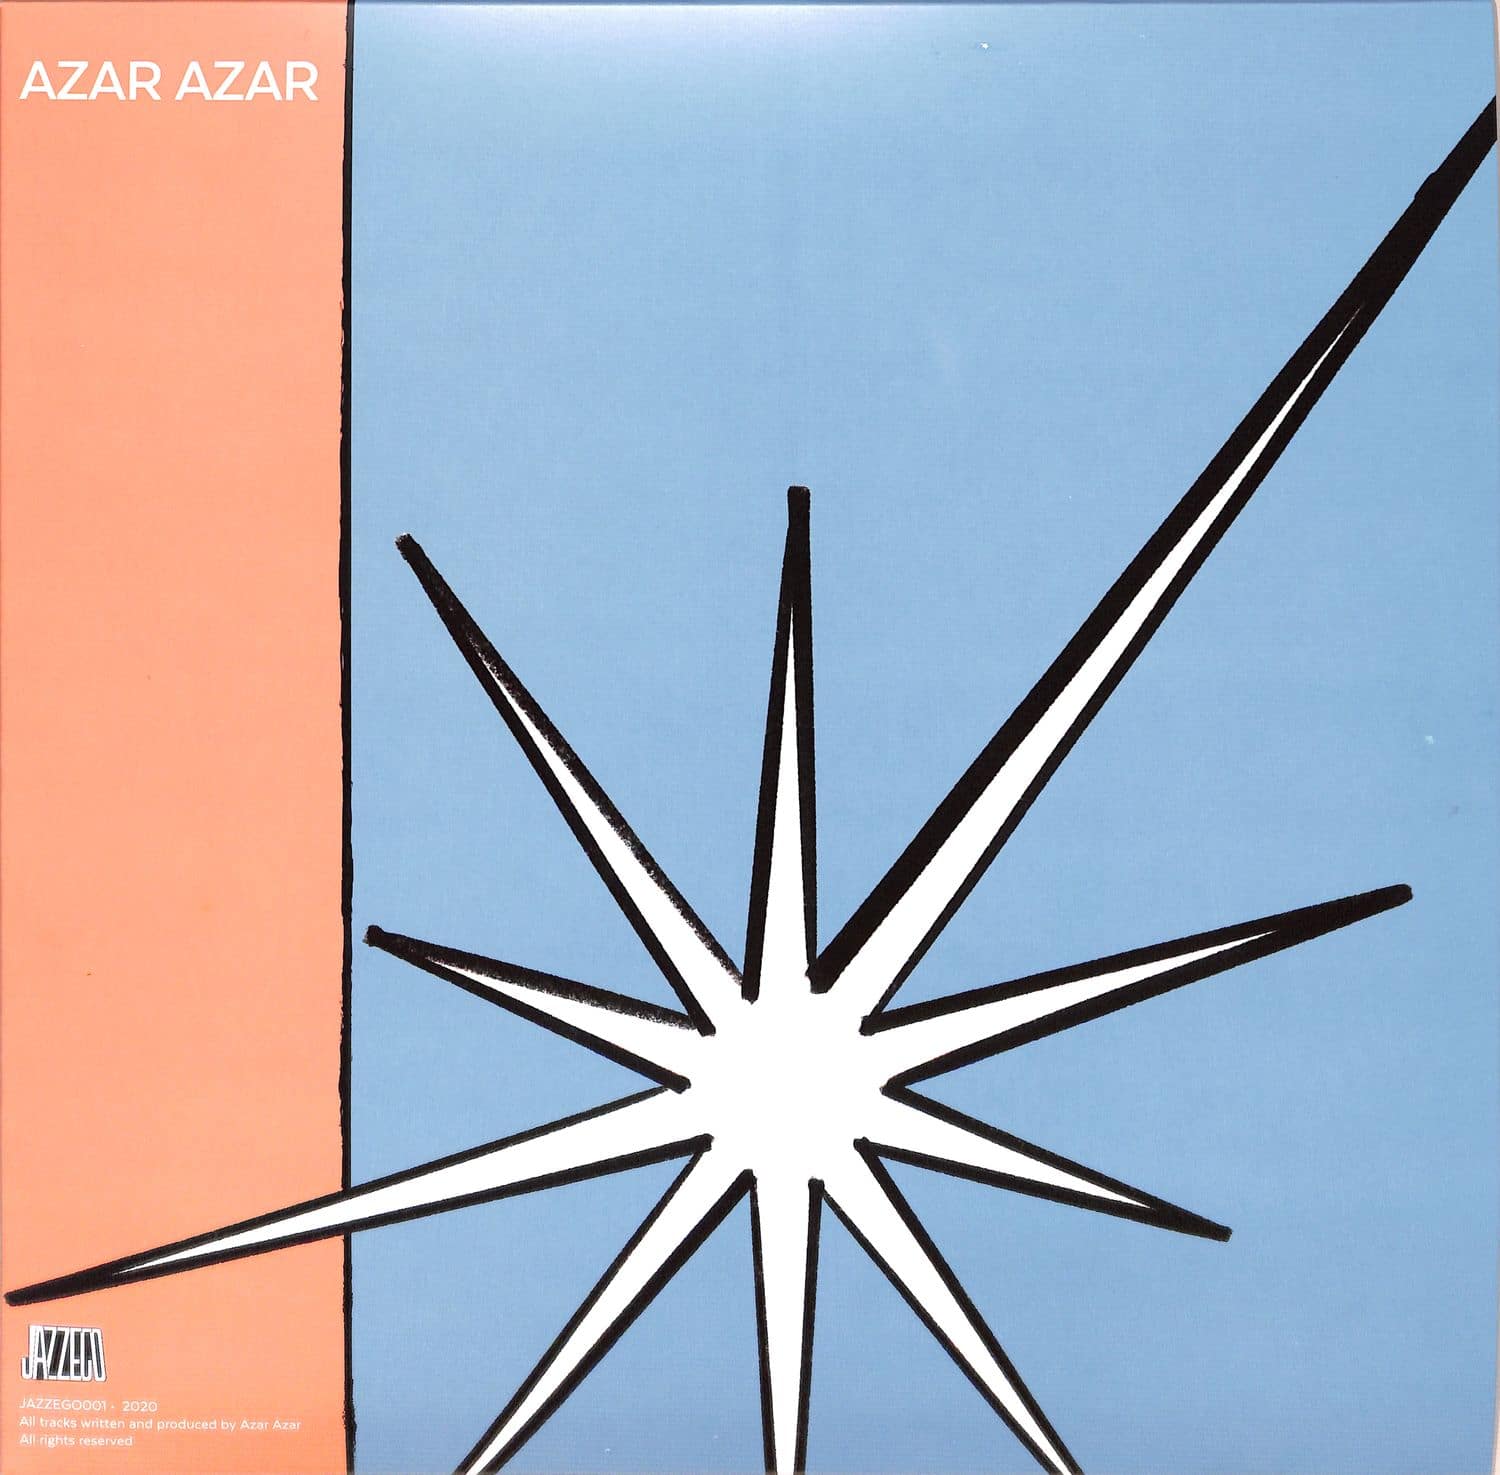 Azar Azar - AZAR AZAR EP